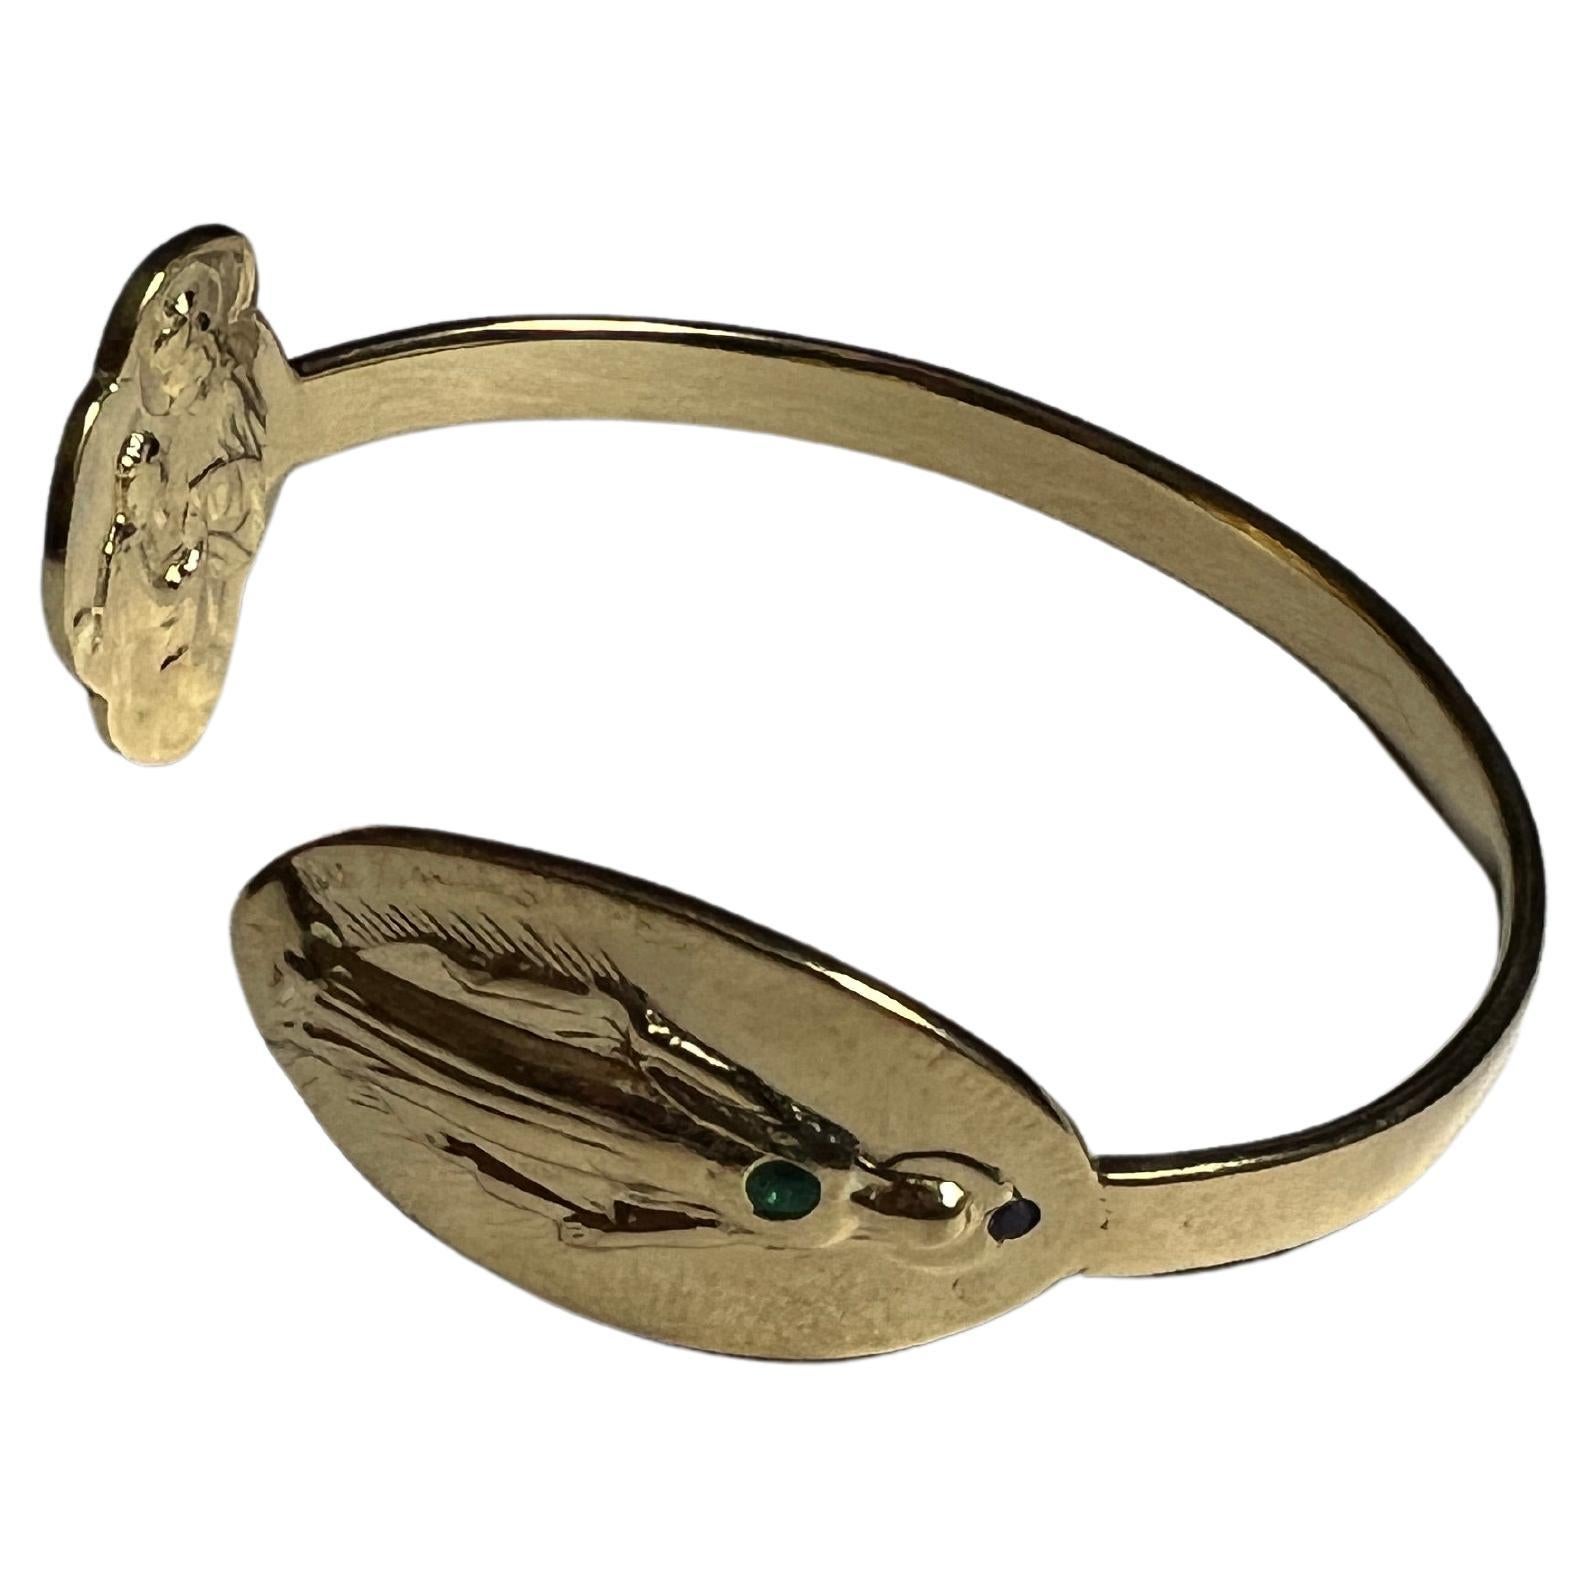 Smaragd Rubin Jungfrau Maria Armreif Armband Manschette Gold plattiert 
Größe Small/Medium

Designer: J DAUPHIN

Symbole oder Medaillen können zu einem mächtigen Werkzeug in unserem Arsenal für das Spirituelle werden. 
Seit dem Altertum werden